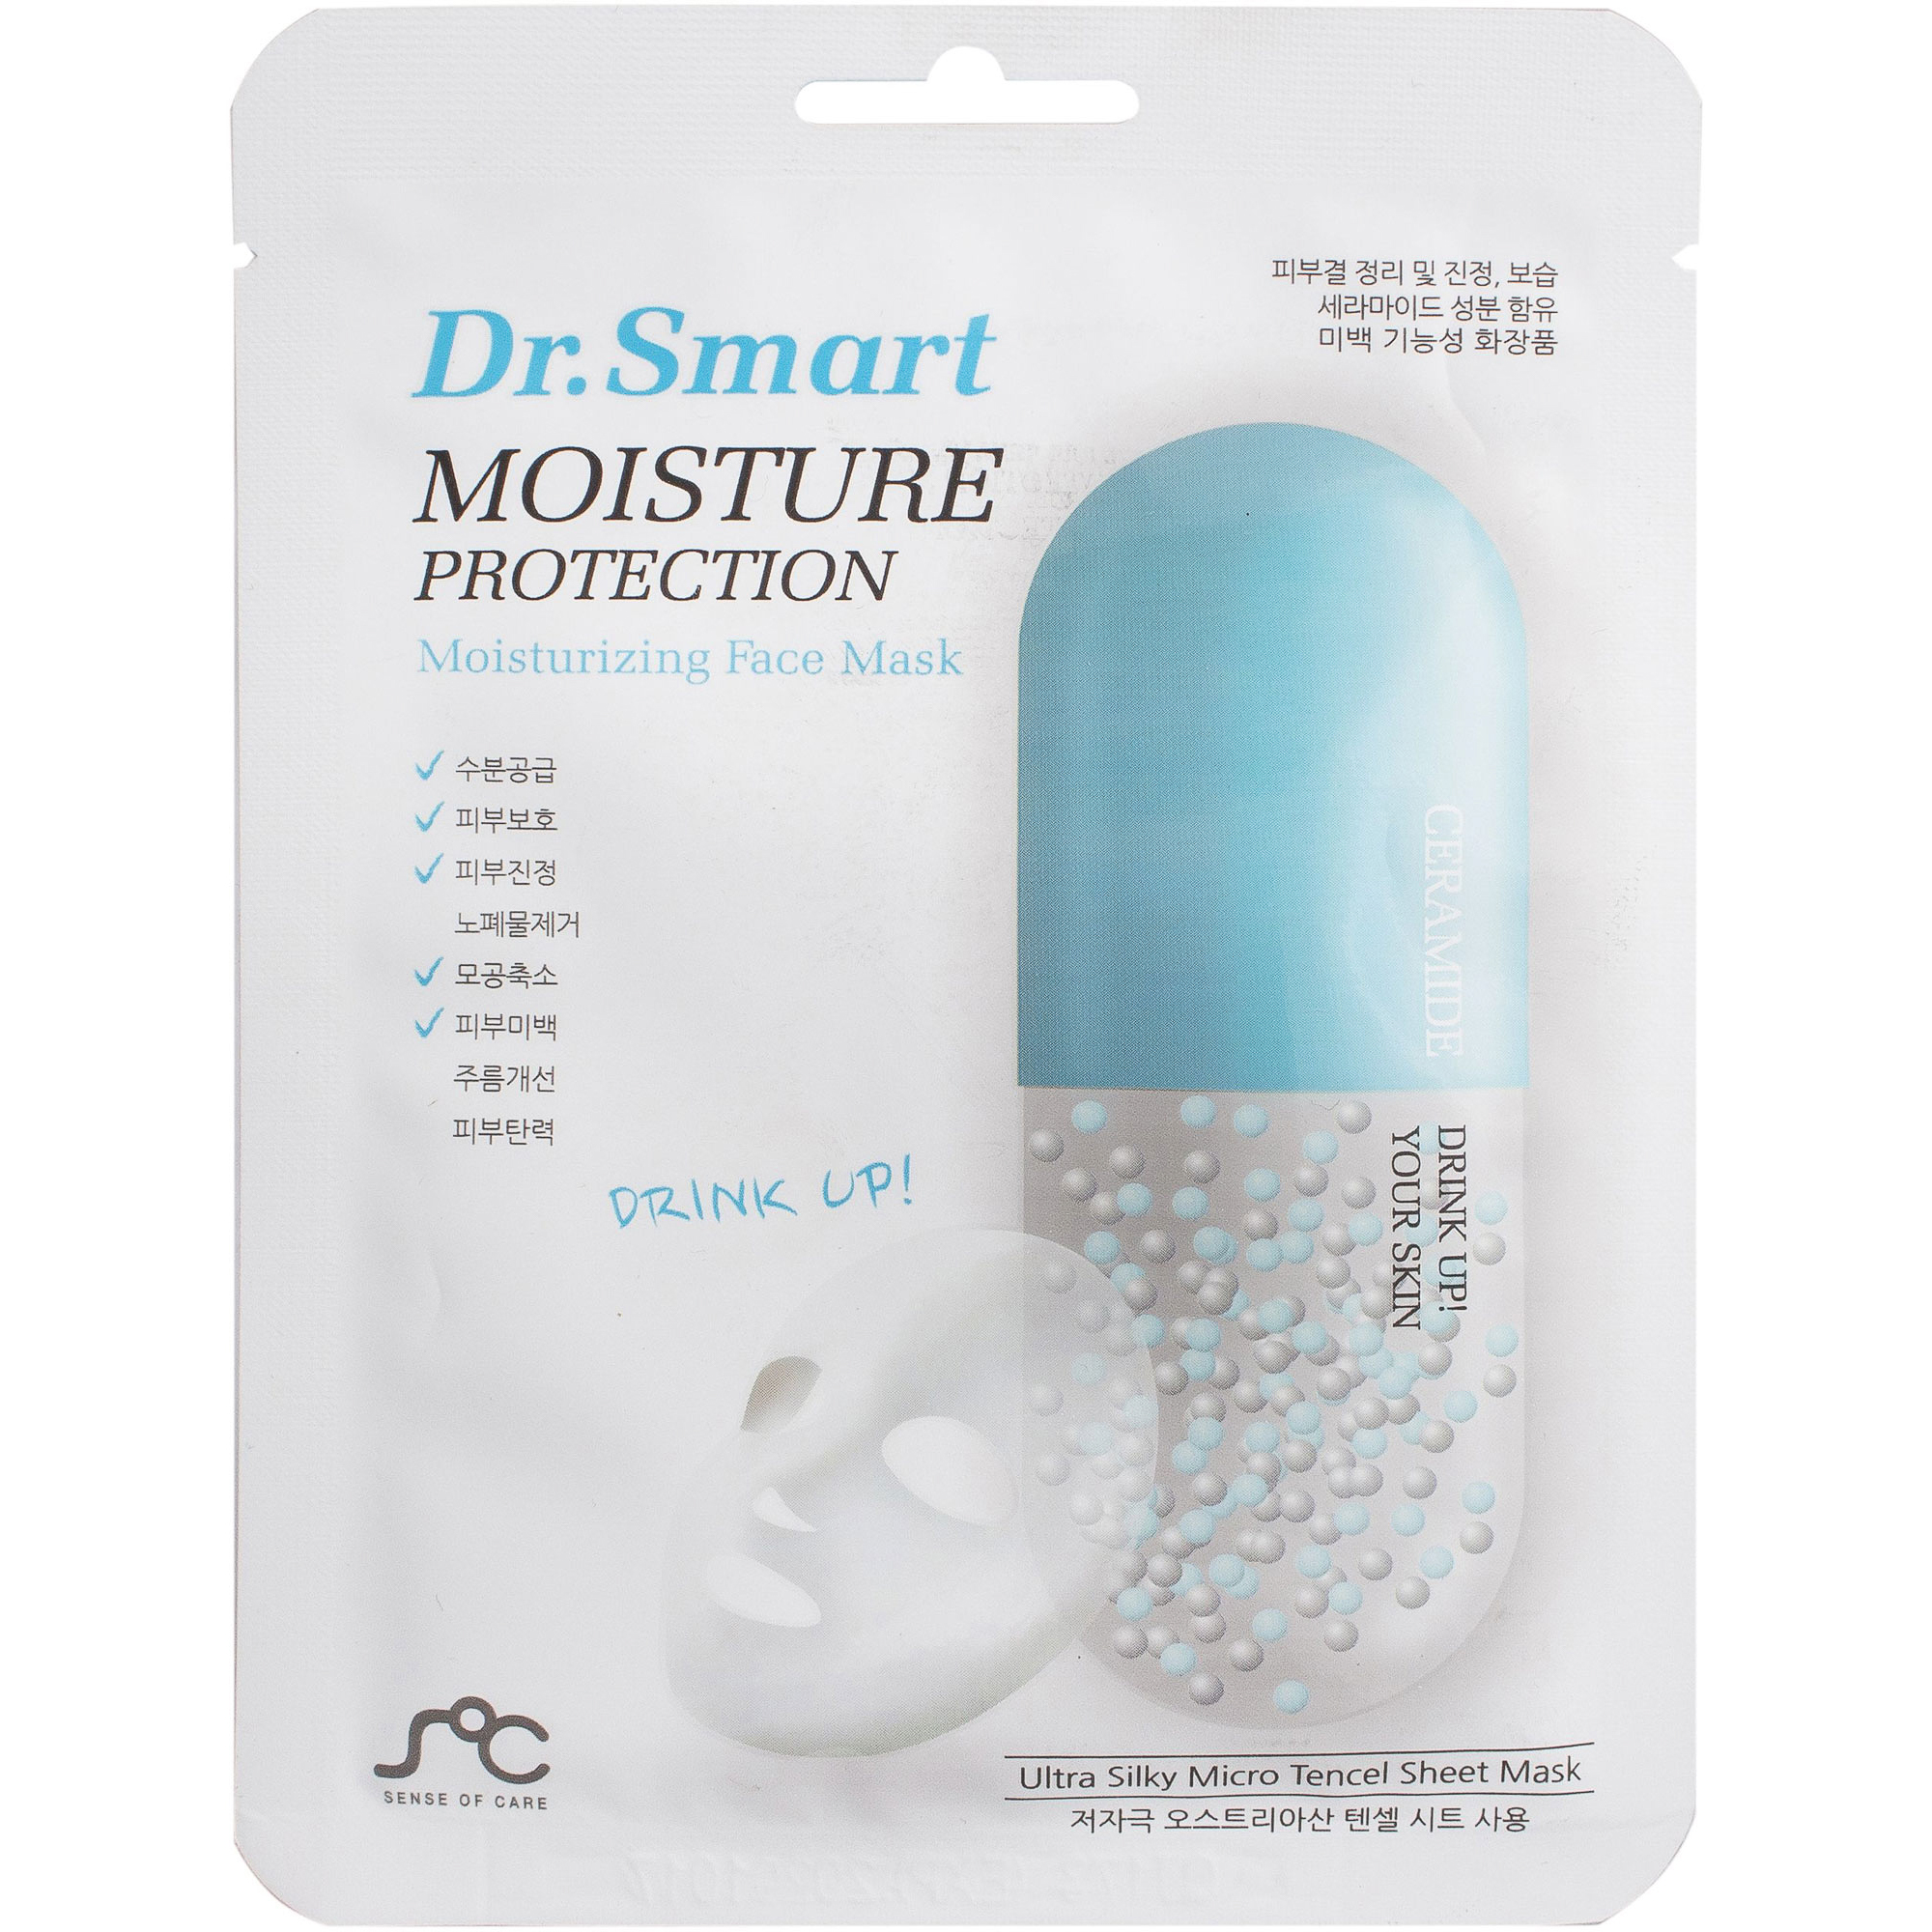 Маска для лица Dr. Smart Moisture Protection Face Mask флюид с spf50 для лица и чувствительных зон тела sensitive zones protective fluid spf50 high protection uva uvb 160240 50 мл